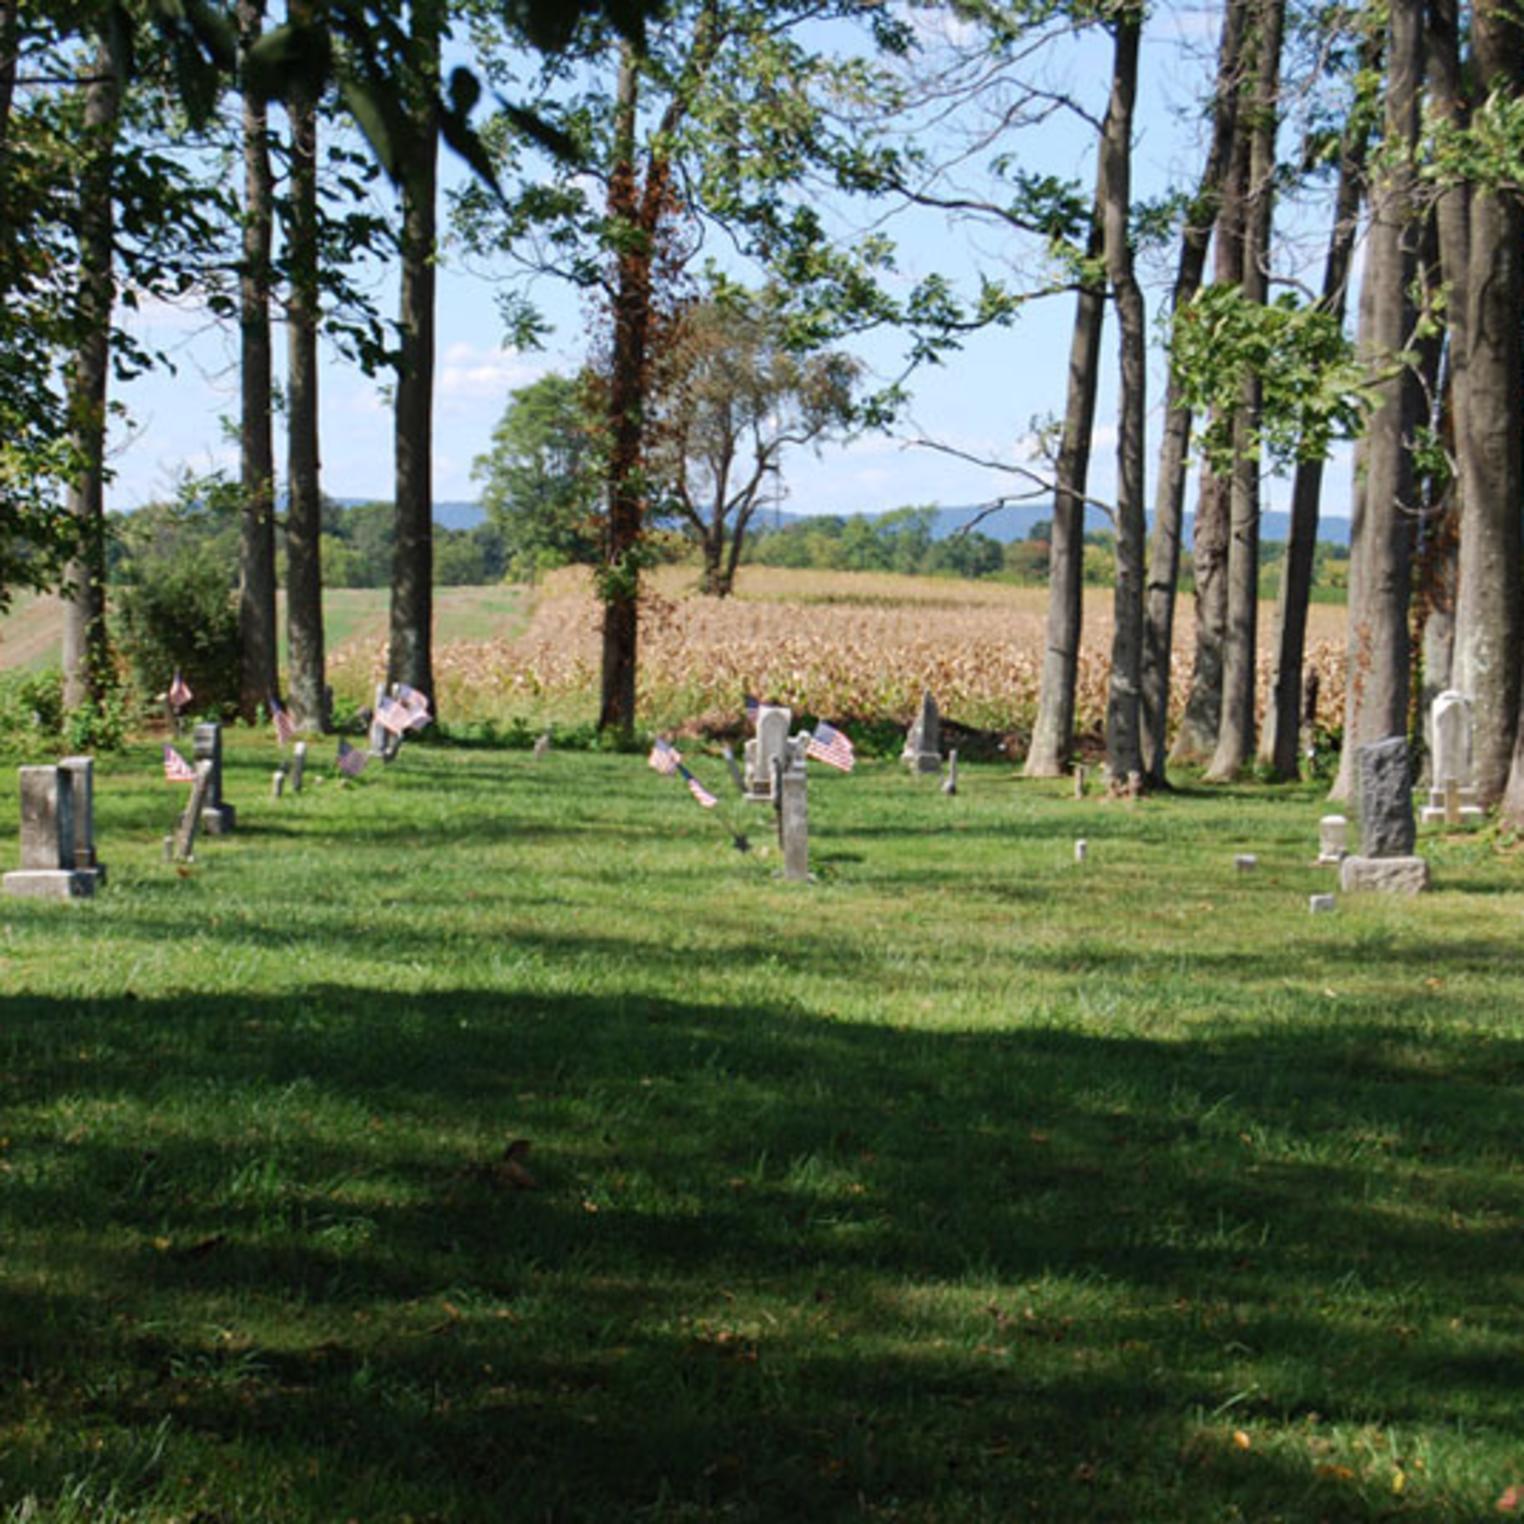 The scenic Lincoln Cemetery